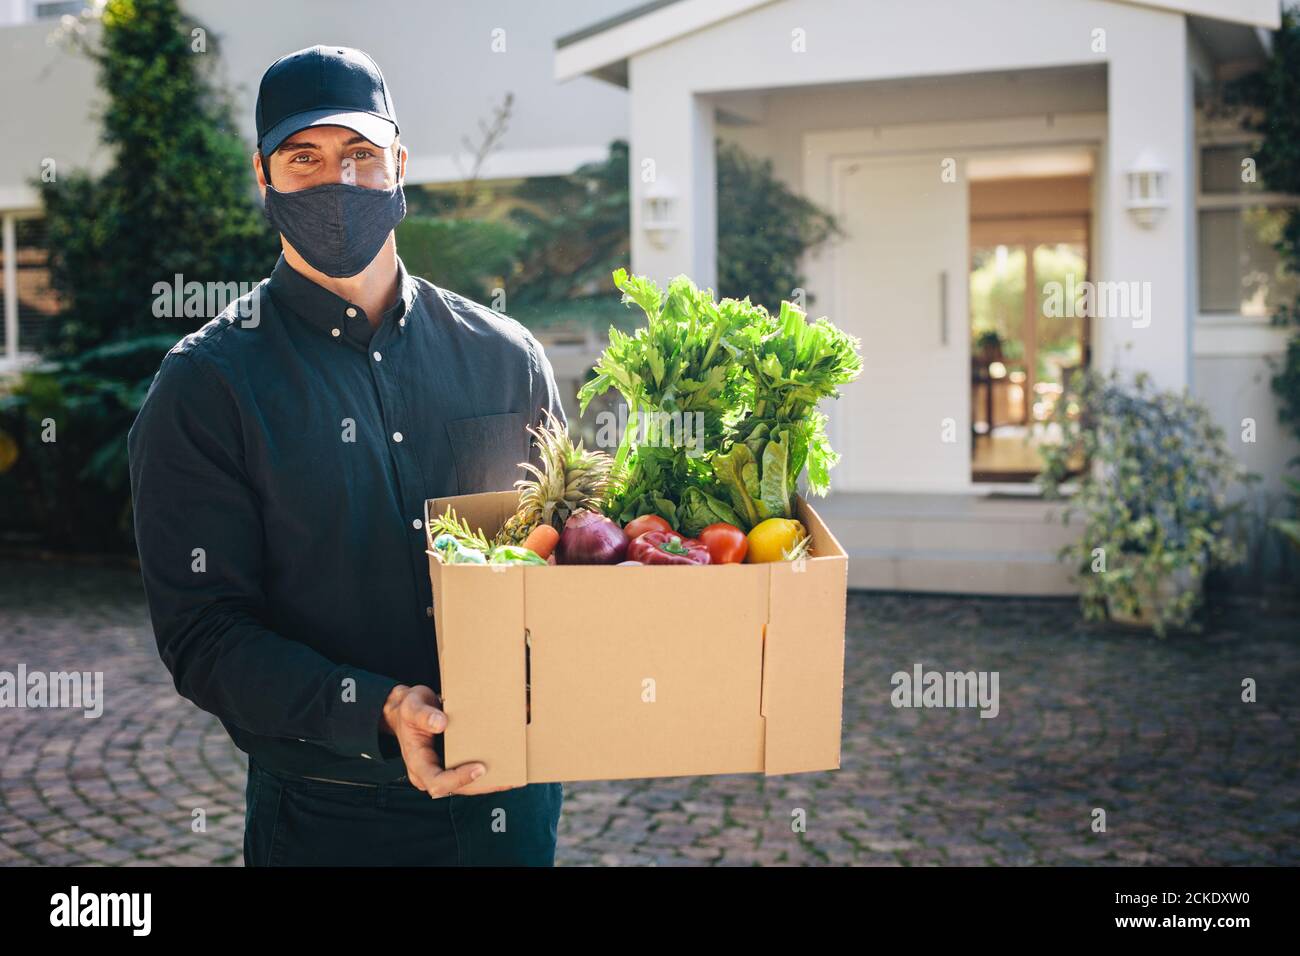 Männlicher Kurierarbeiter liefert Lebensmittel, die während einer Pandemie online bestellt wurden. Person, die eine schützende Gesichtsmaske trägt, liefert Lebensmittel und Lebensmittel. Stockfoto